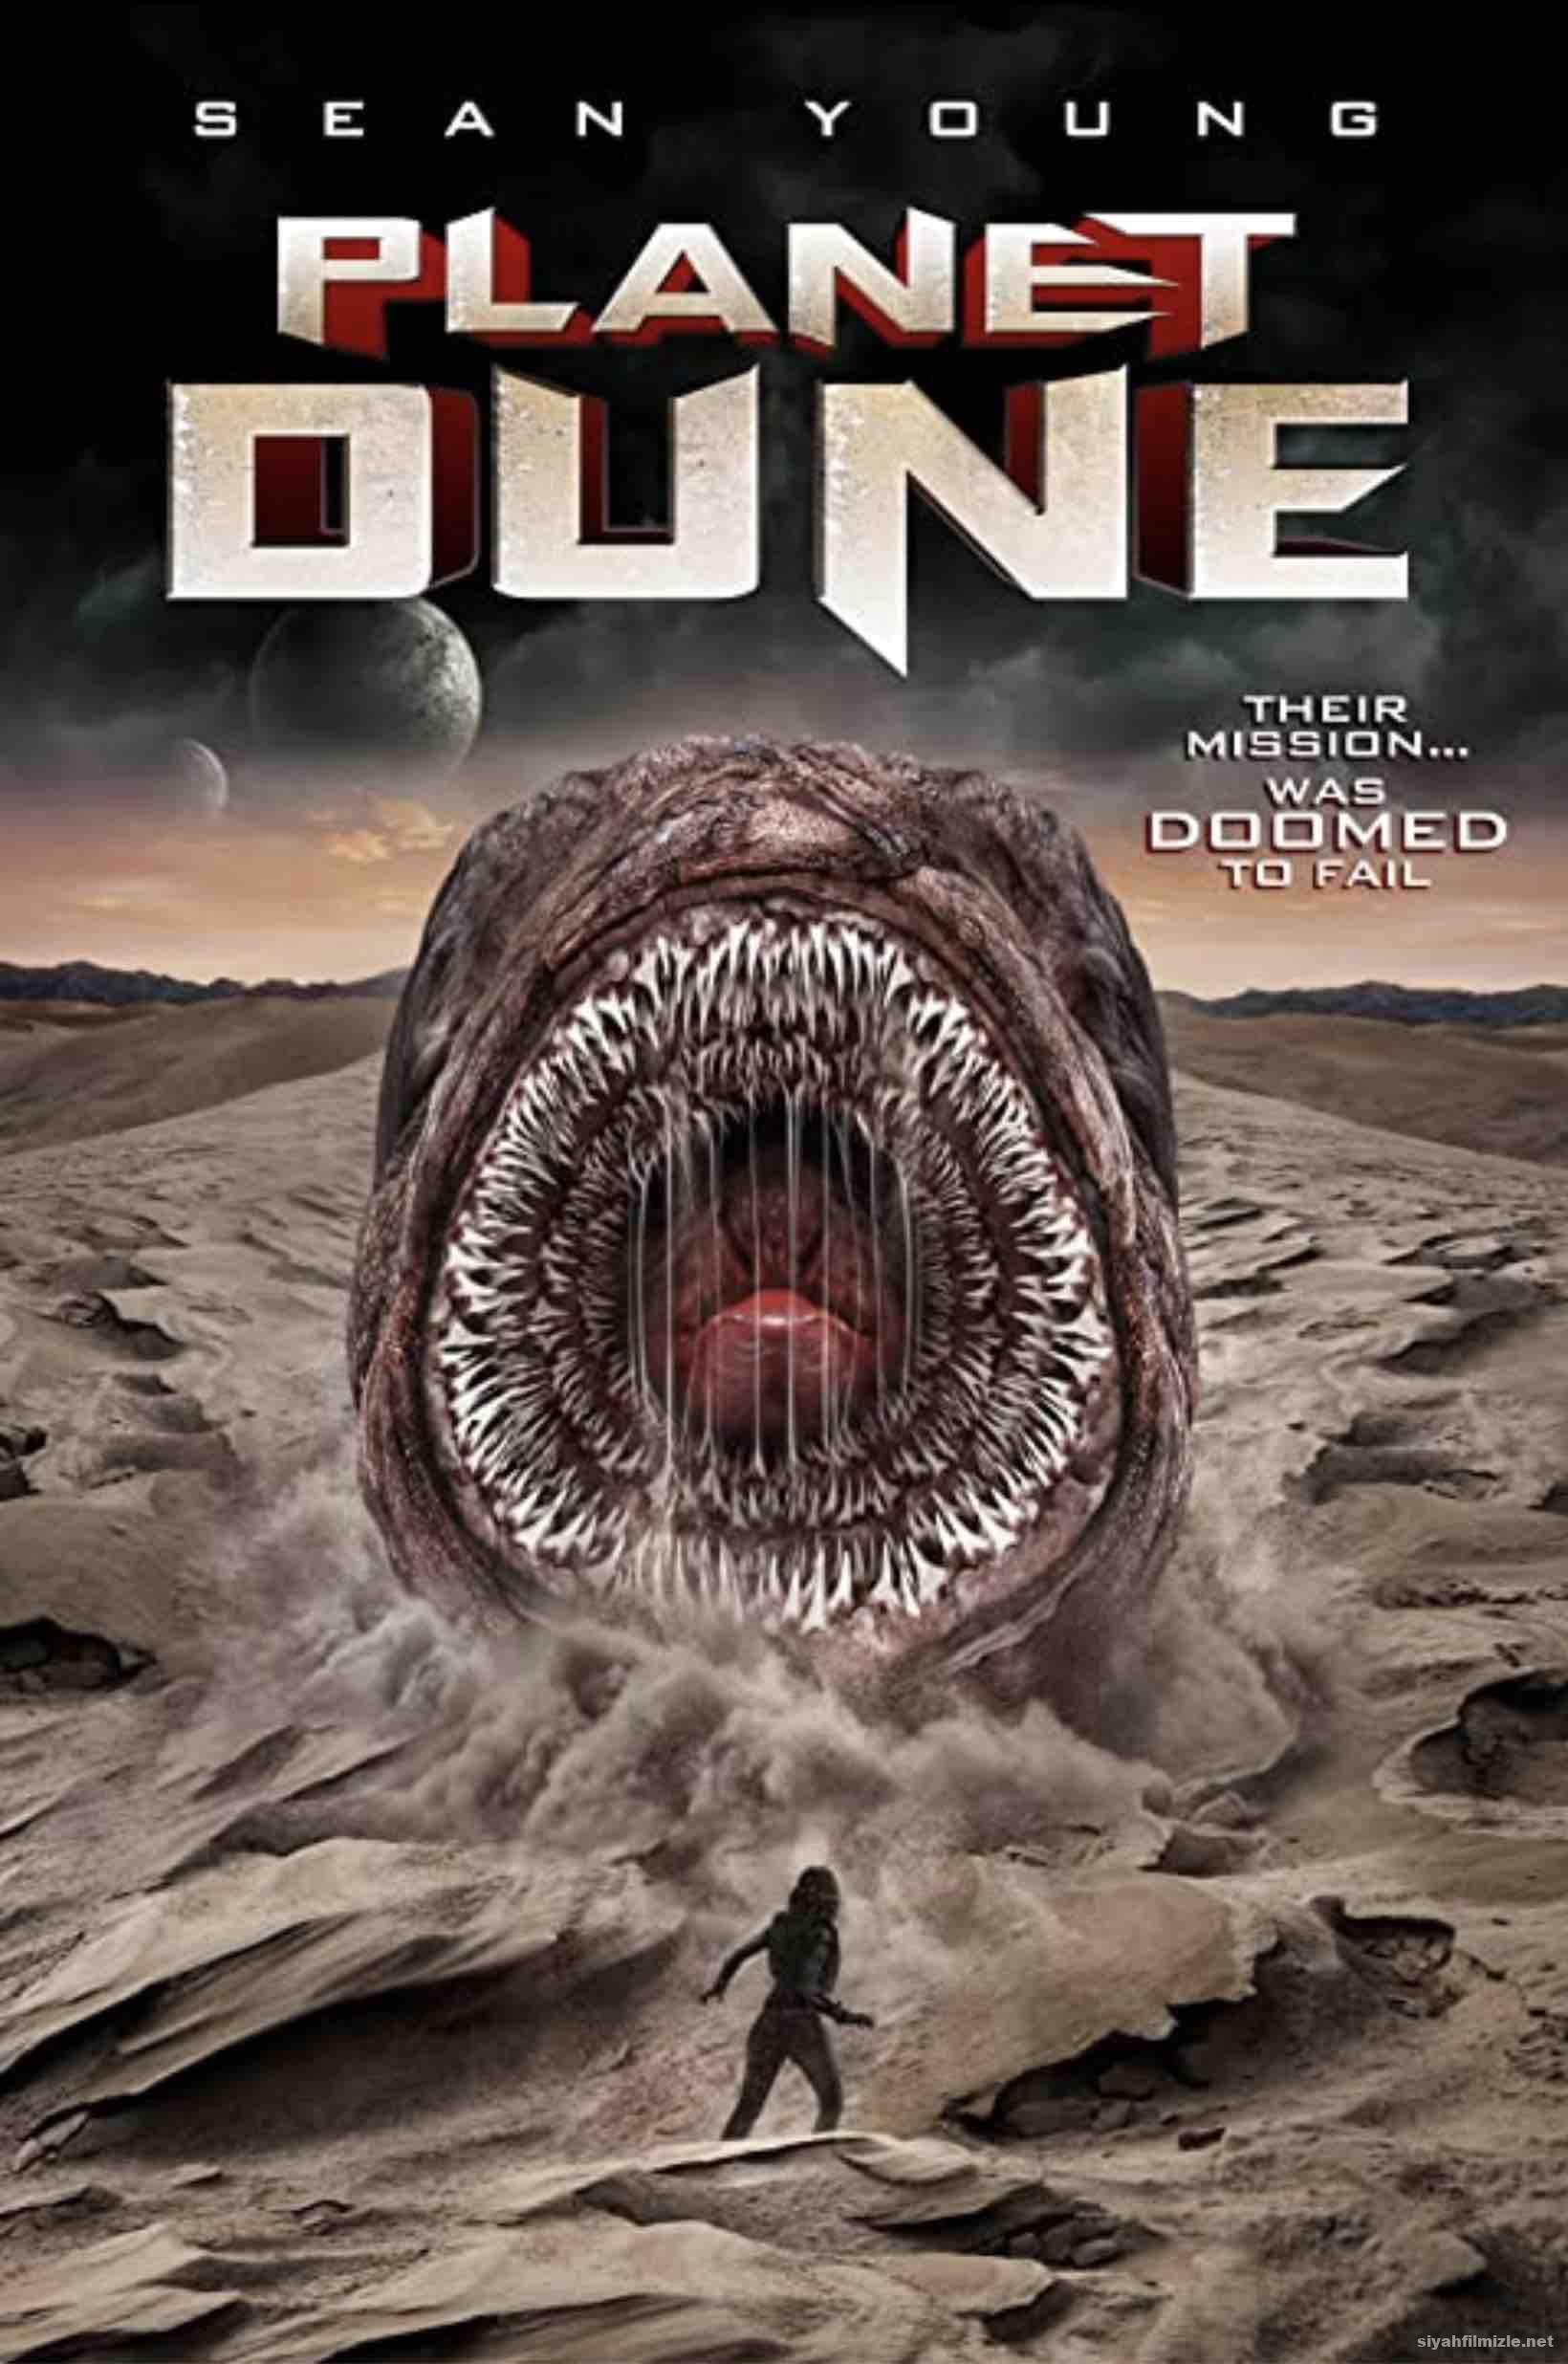 Planet Dune (2021) Filmi Türkçe Altyazılı Full 1080p izle